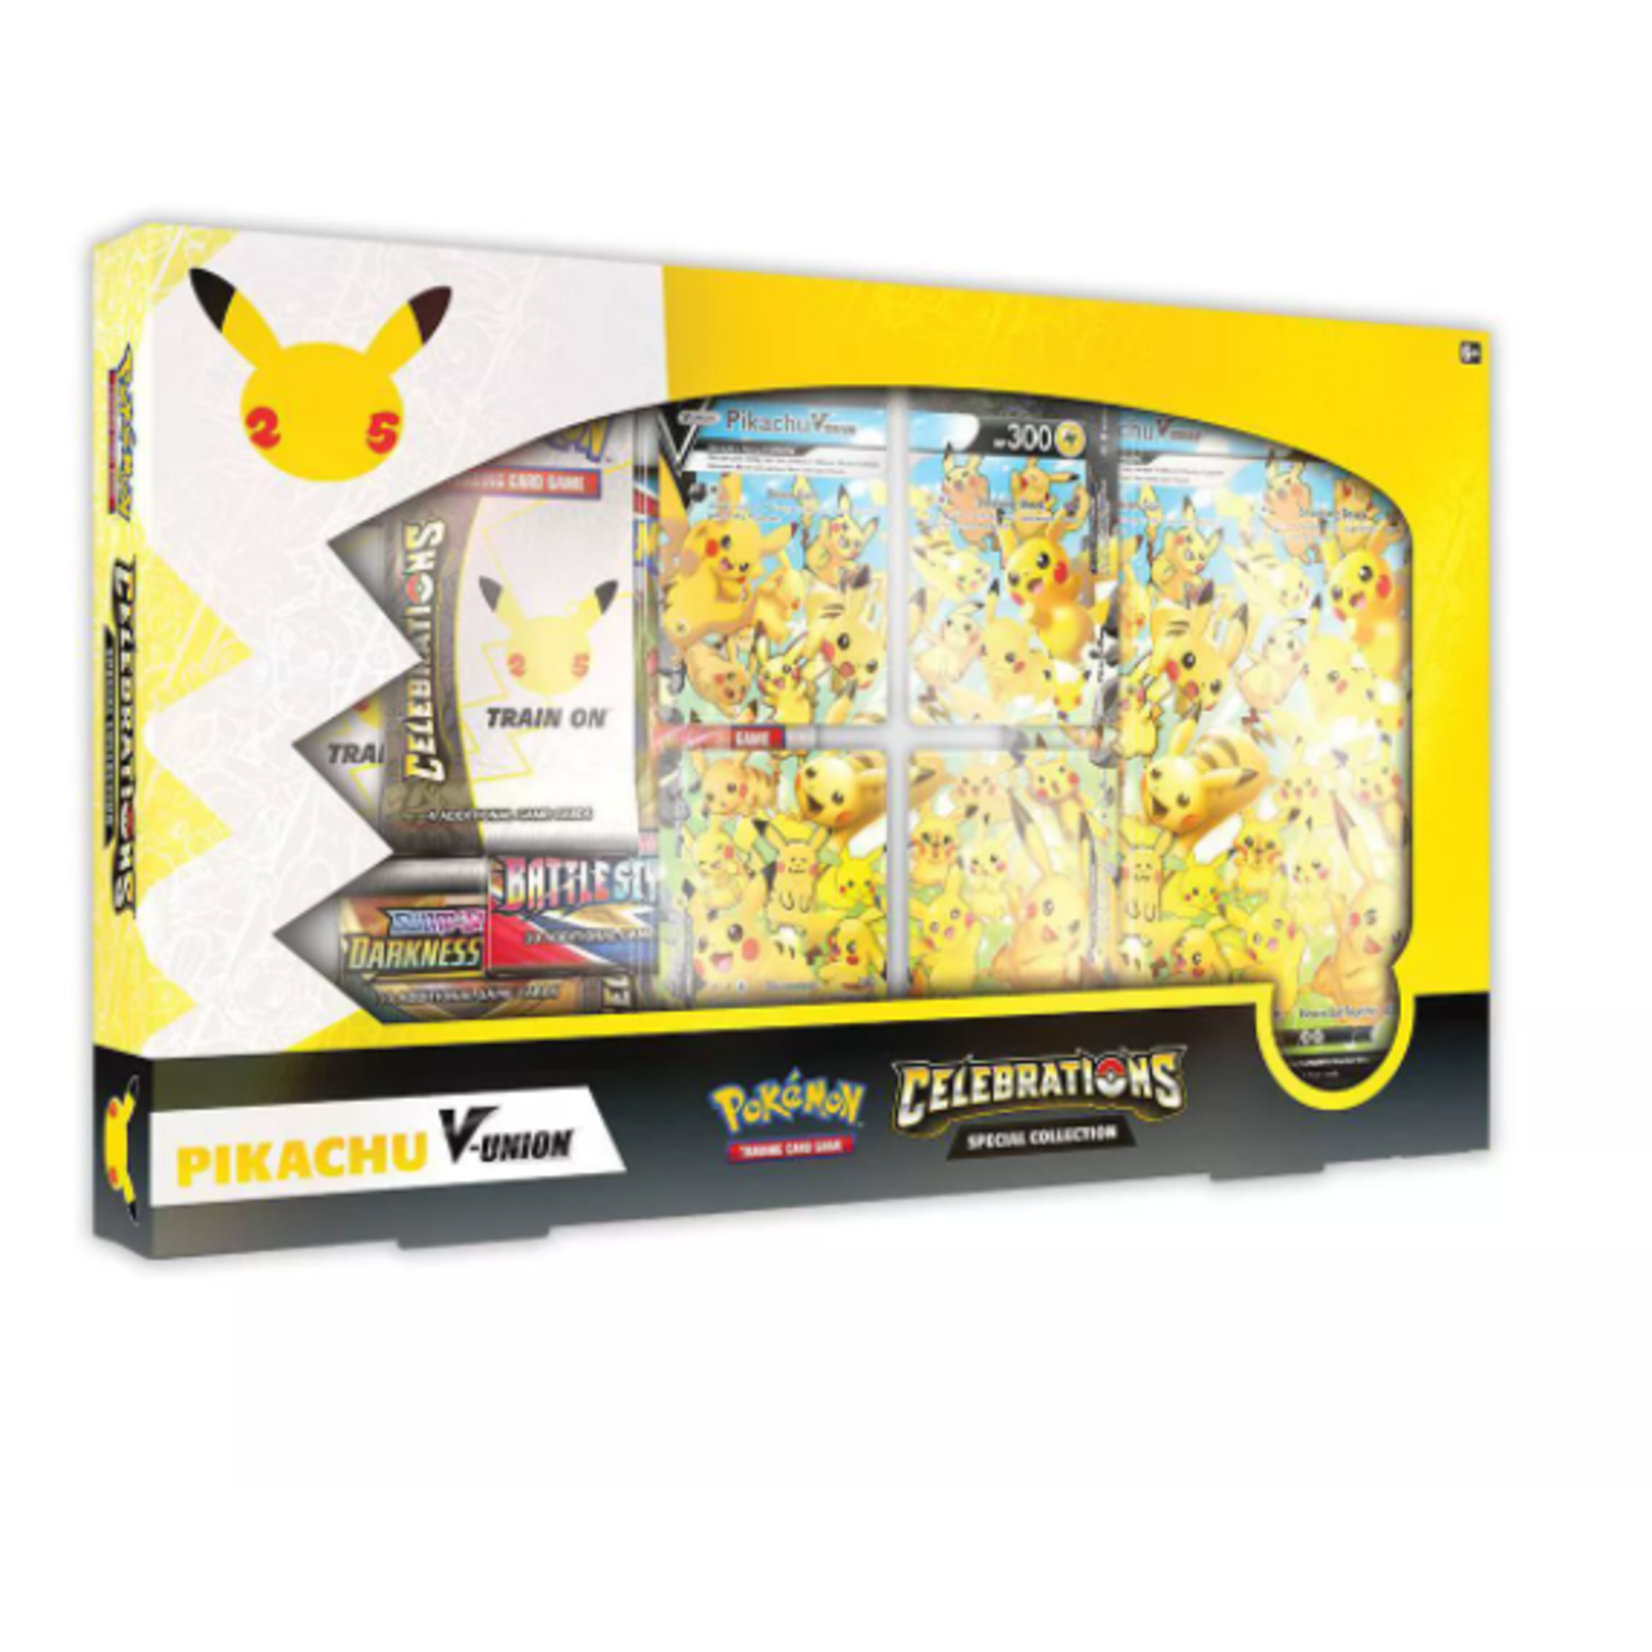 Celebrations Pikachu V Union Box (Limit 1)